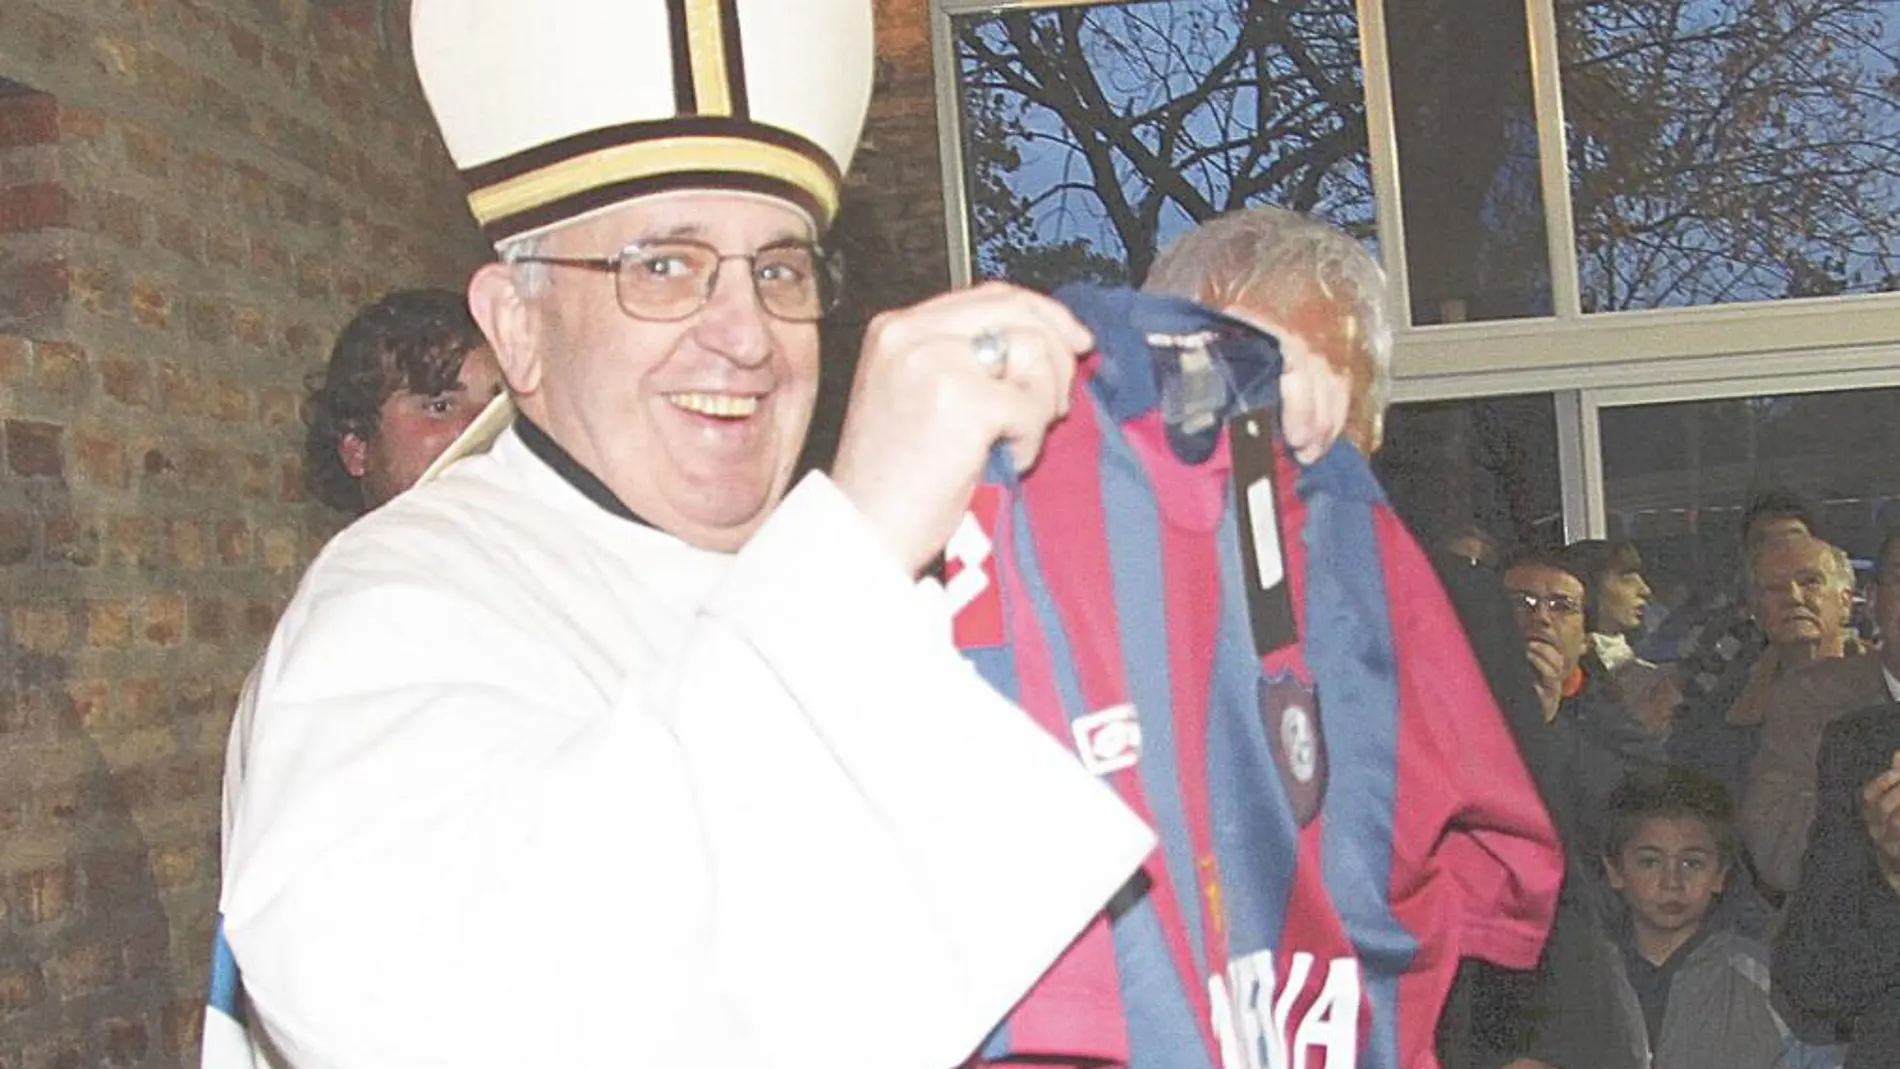 El Papa Francisco, con una camiseta del equipo argentino San Lorenzo